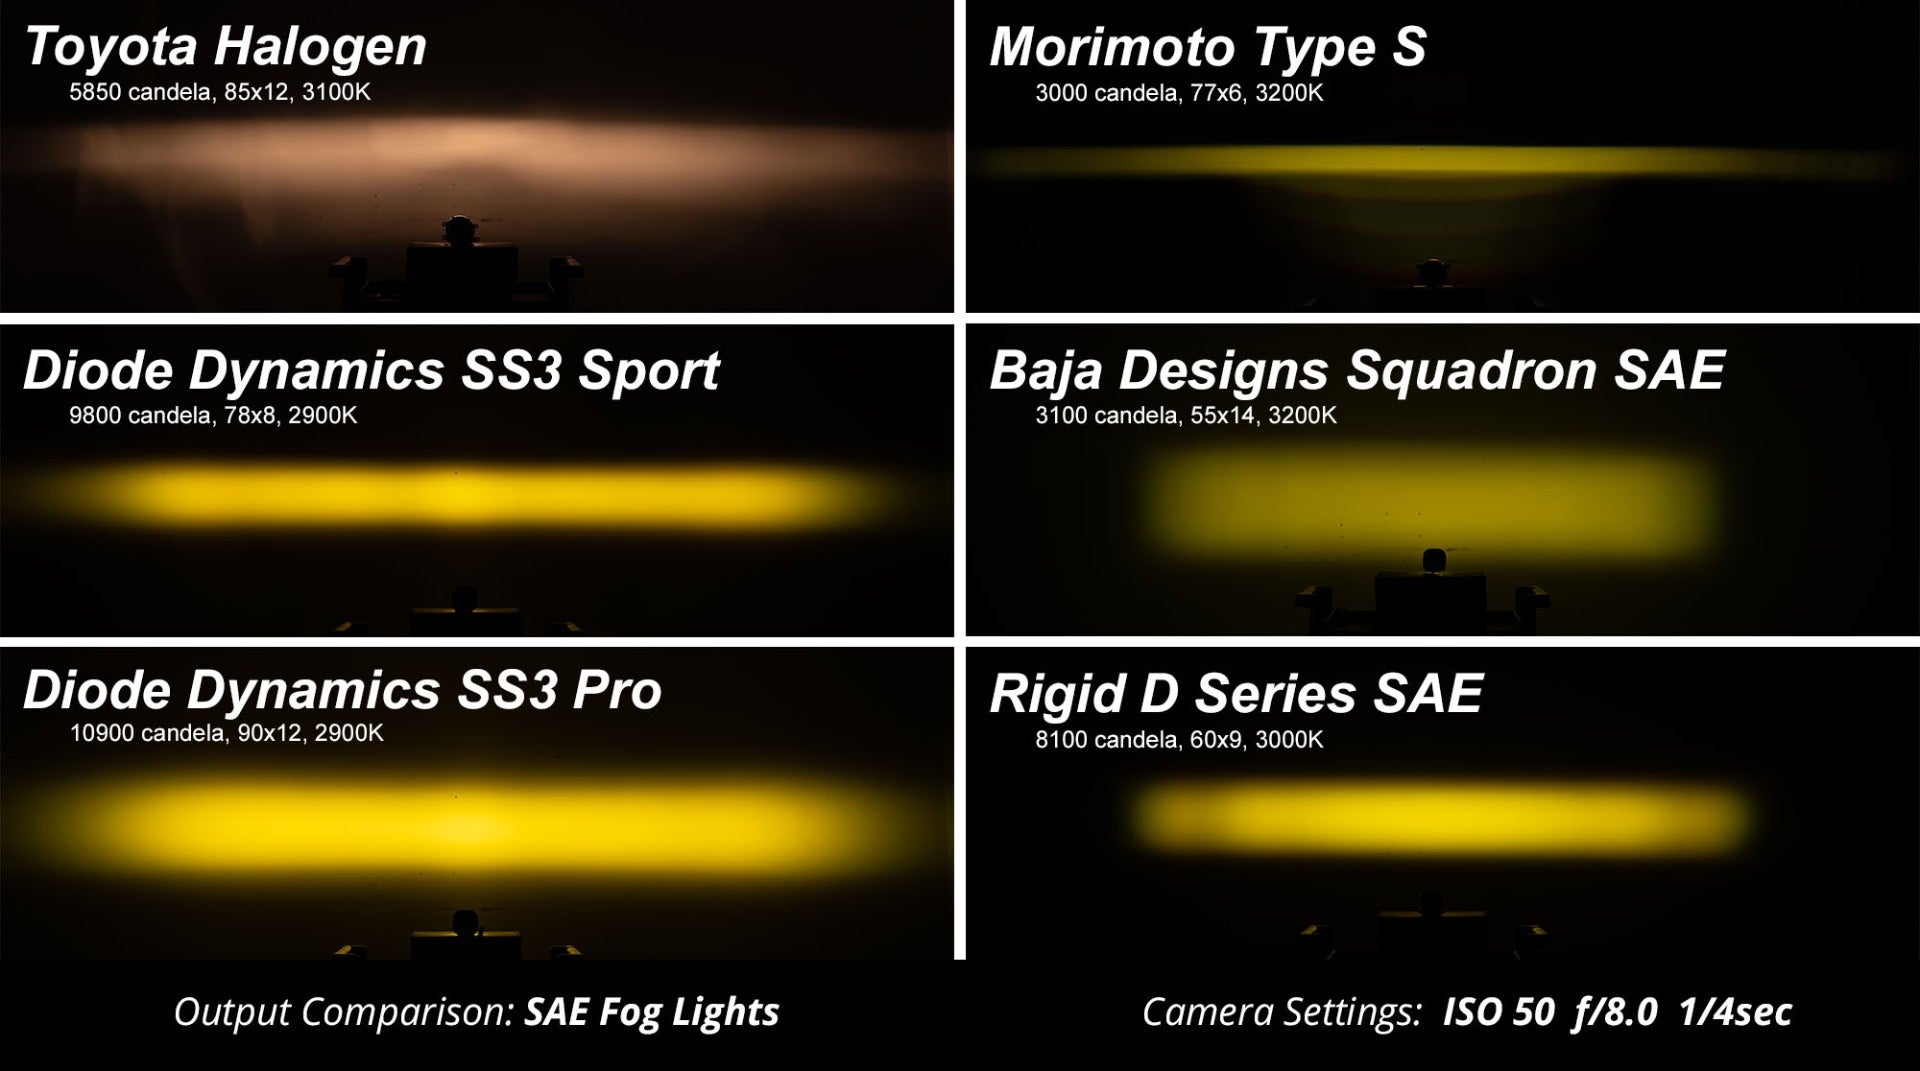 SS3 LED Fog Light Kit for 2011-2013 Acura TSX White SAE Fog Pro Diode Dynamics